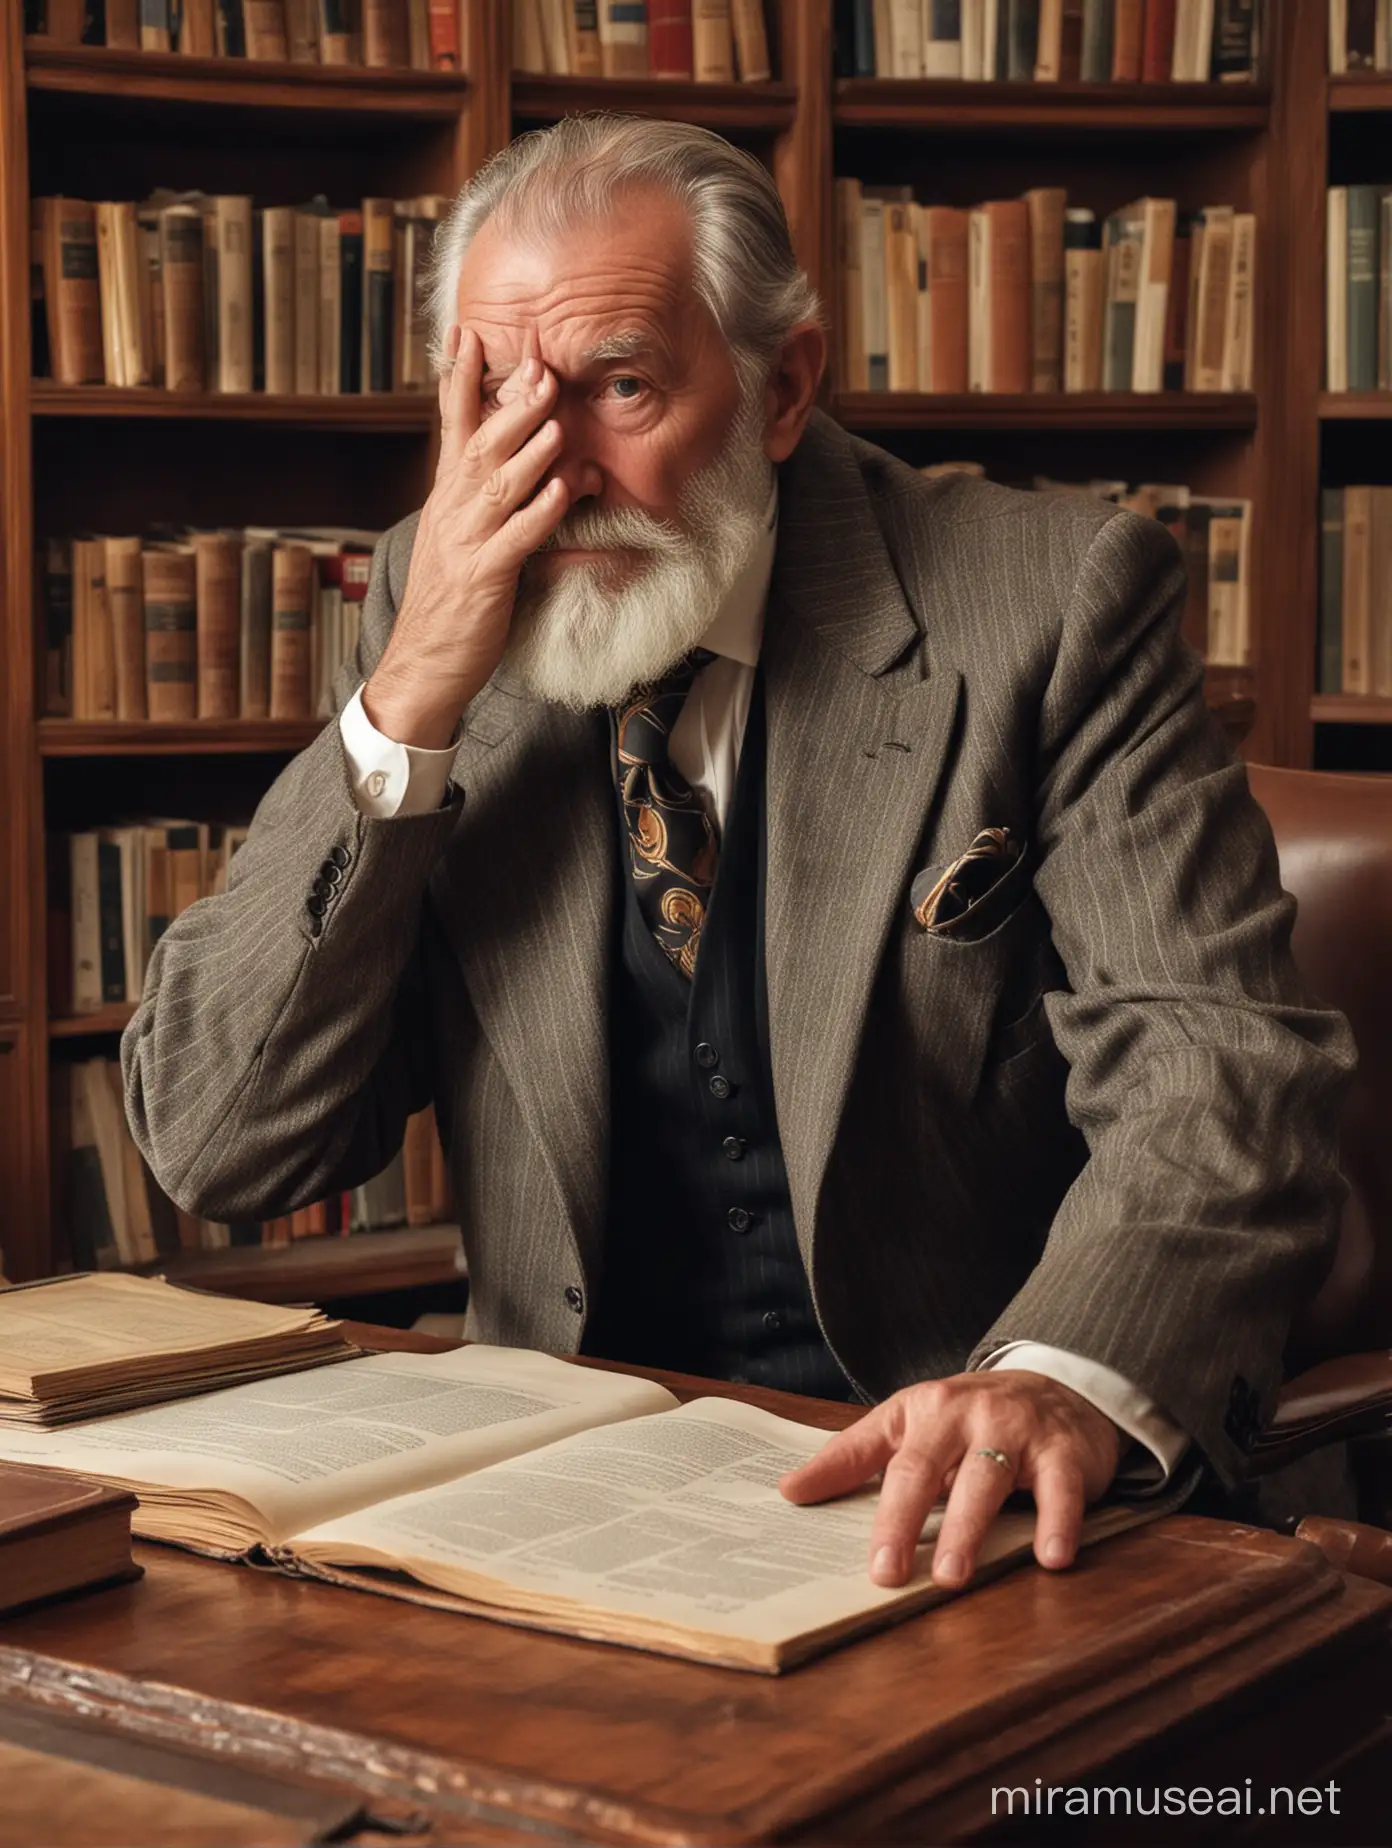 Anciano de barba prolija, cubre su cara con sus dos manos, vestido con traje a la moda de 1930, en una habitación con escritorio y biblioteca, en una casona antigua.